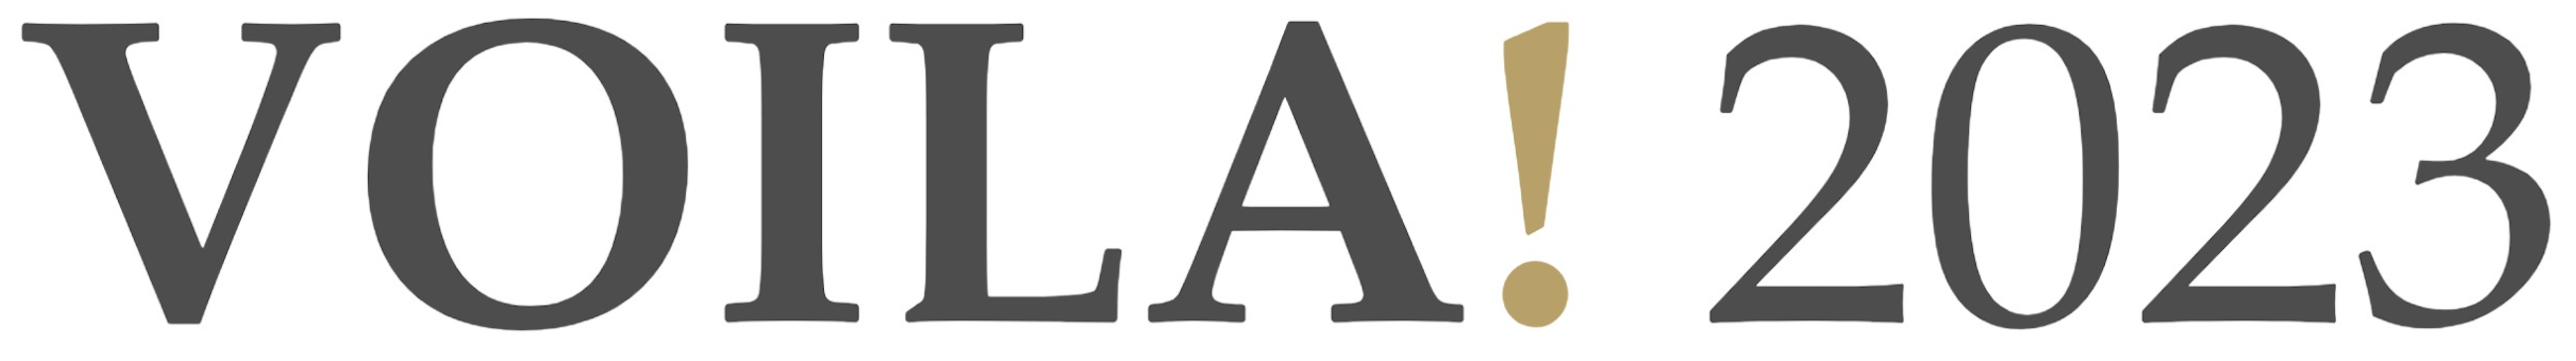 VOILA 2023 logo